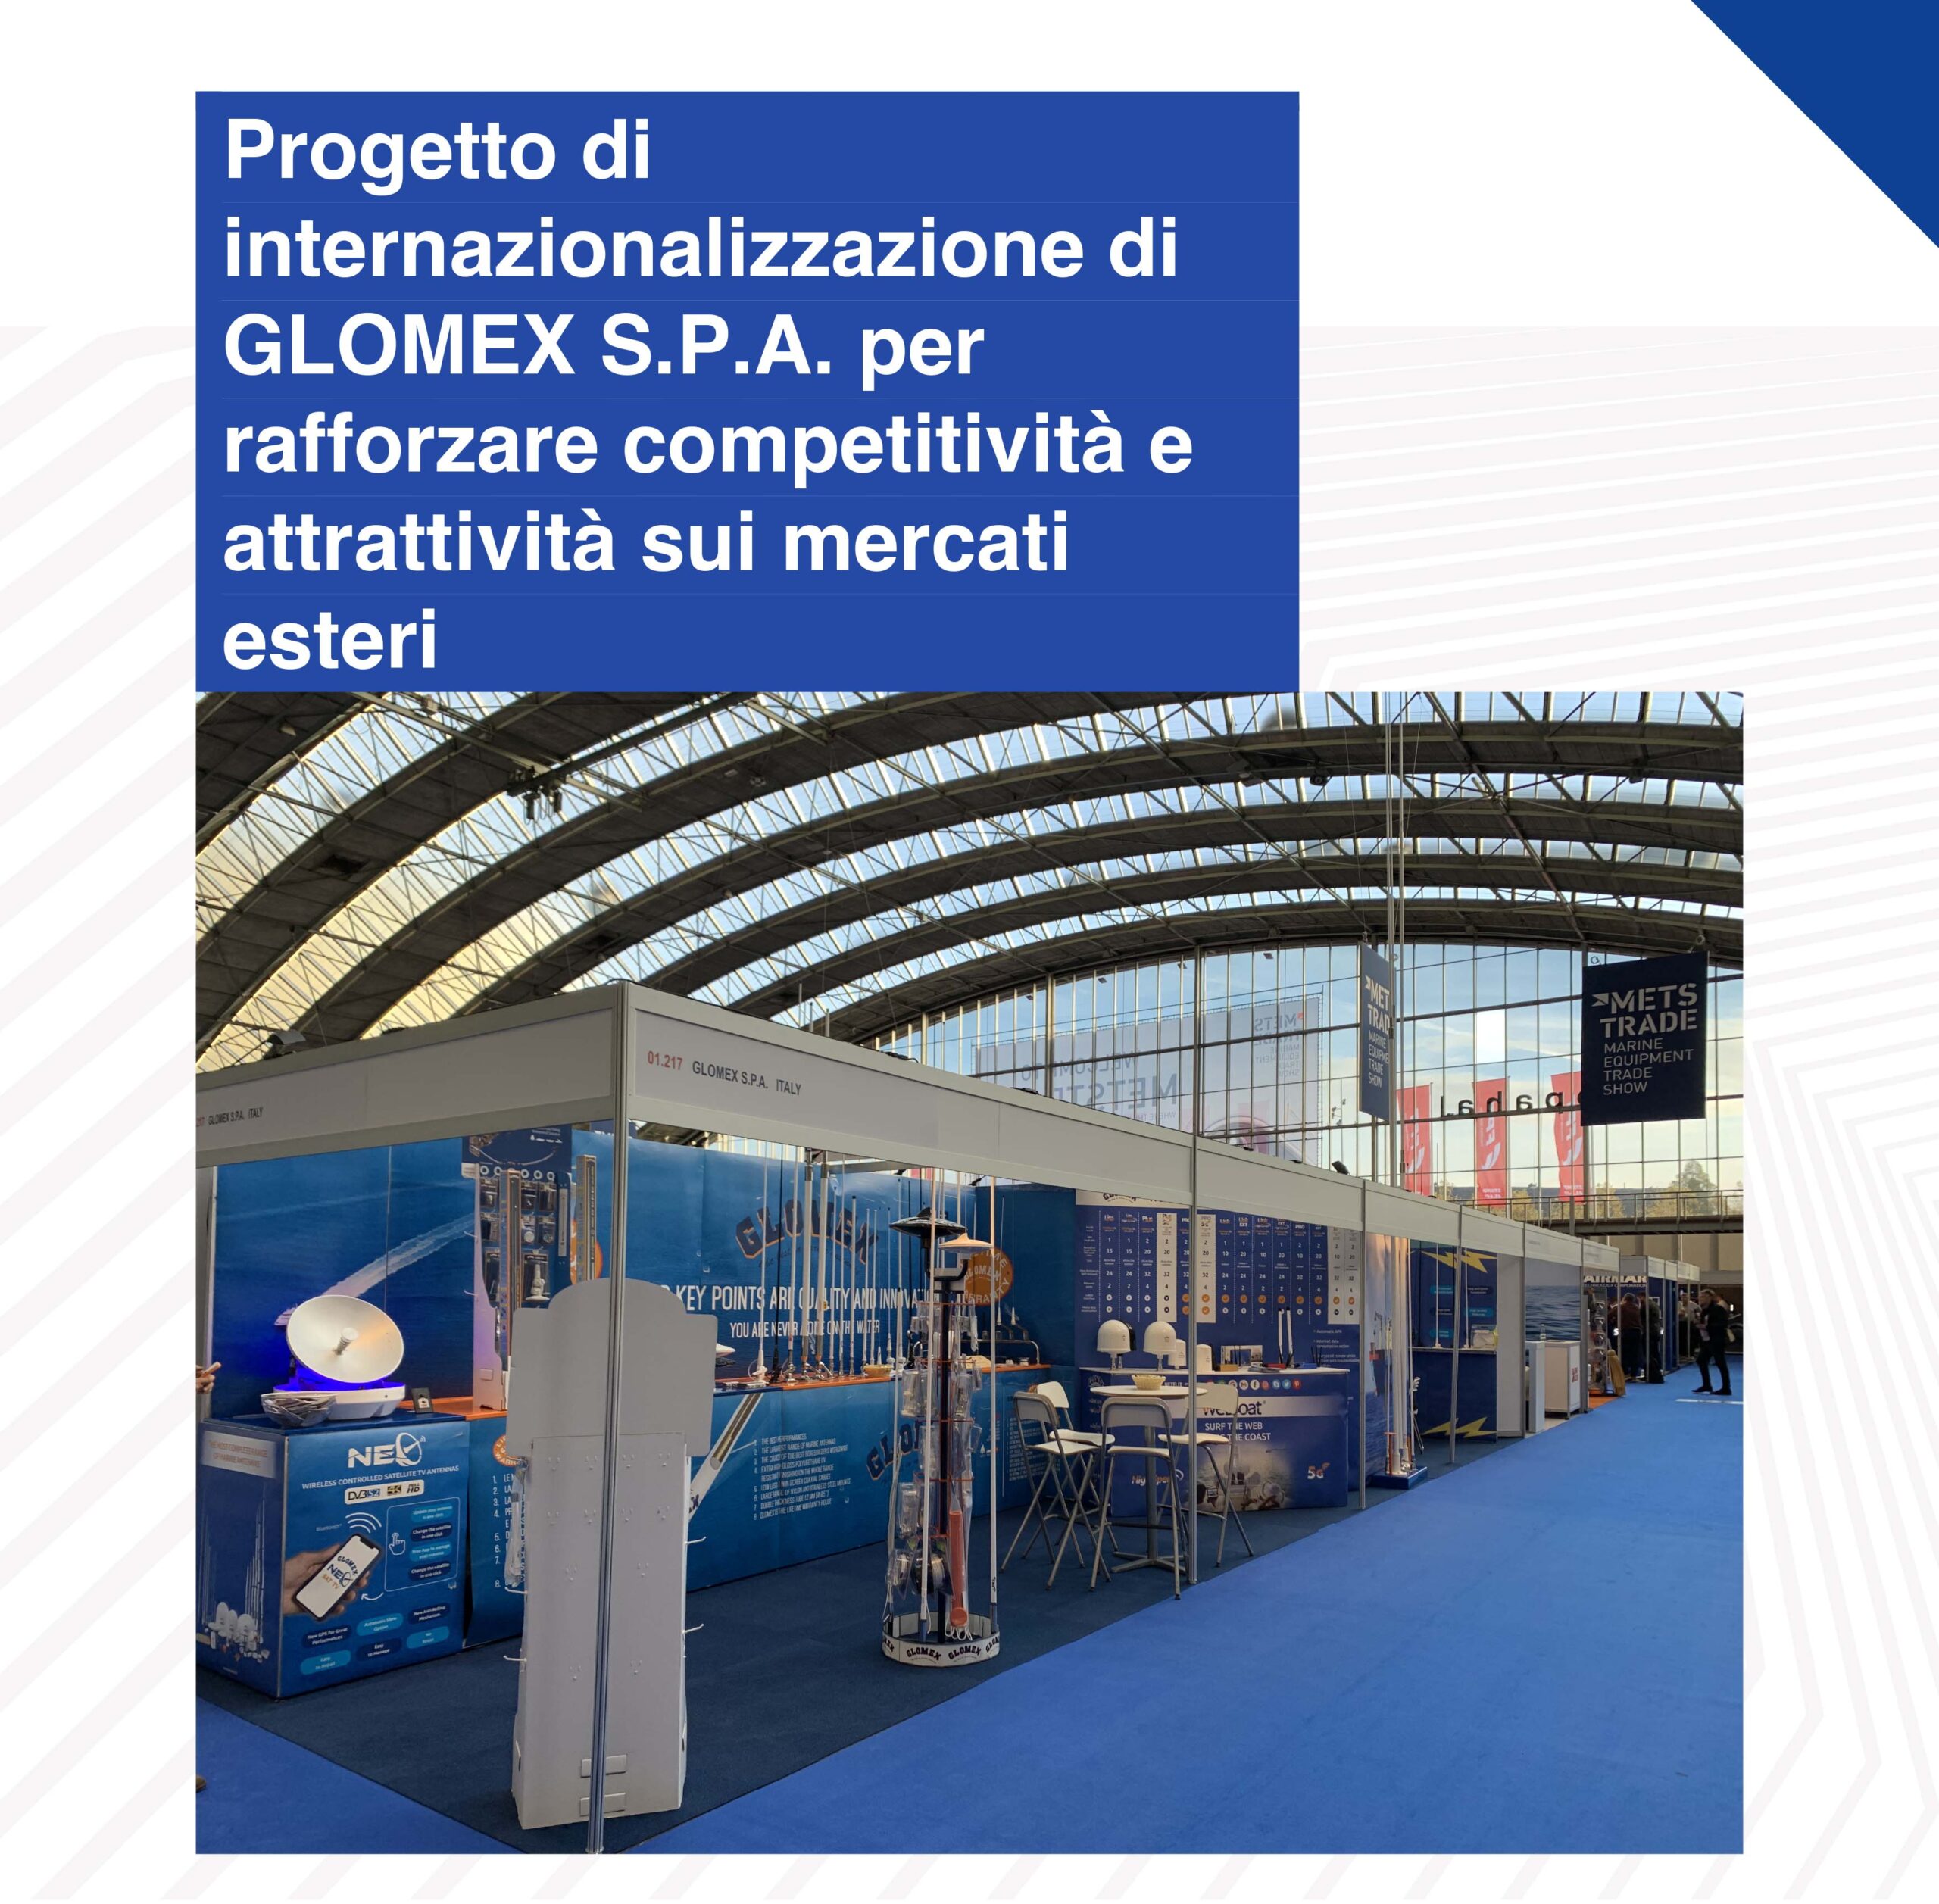 Progetto di internazionalizzazione di GLOMEX S.P.A. per rafforzare competitività e attrattività sui mercati esteri